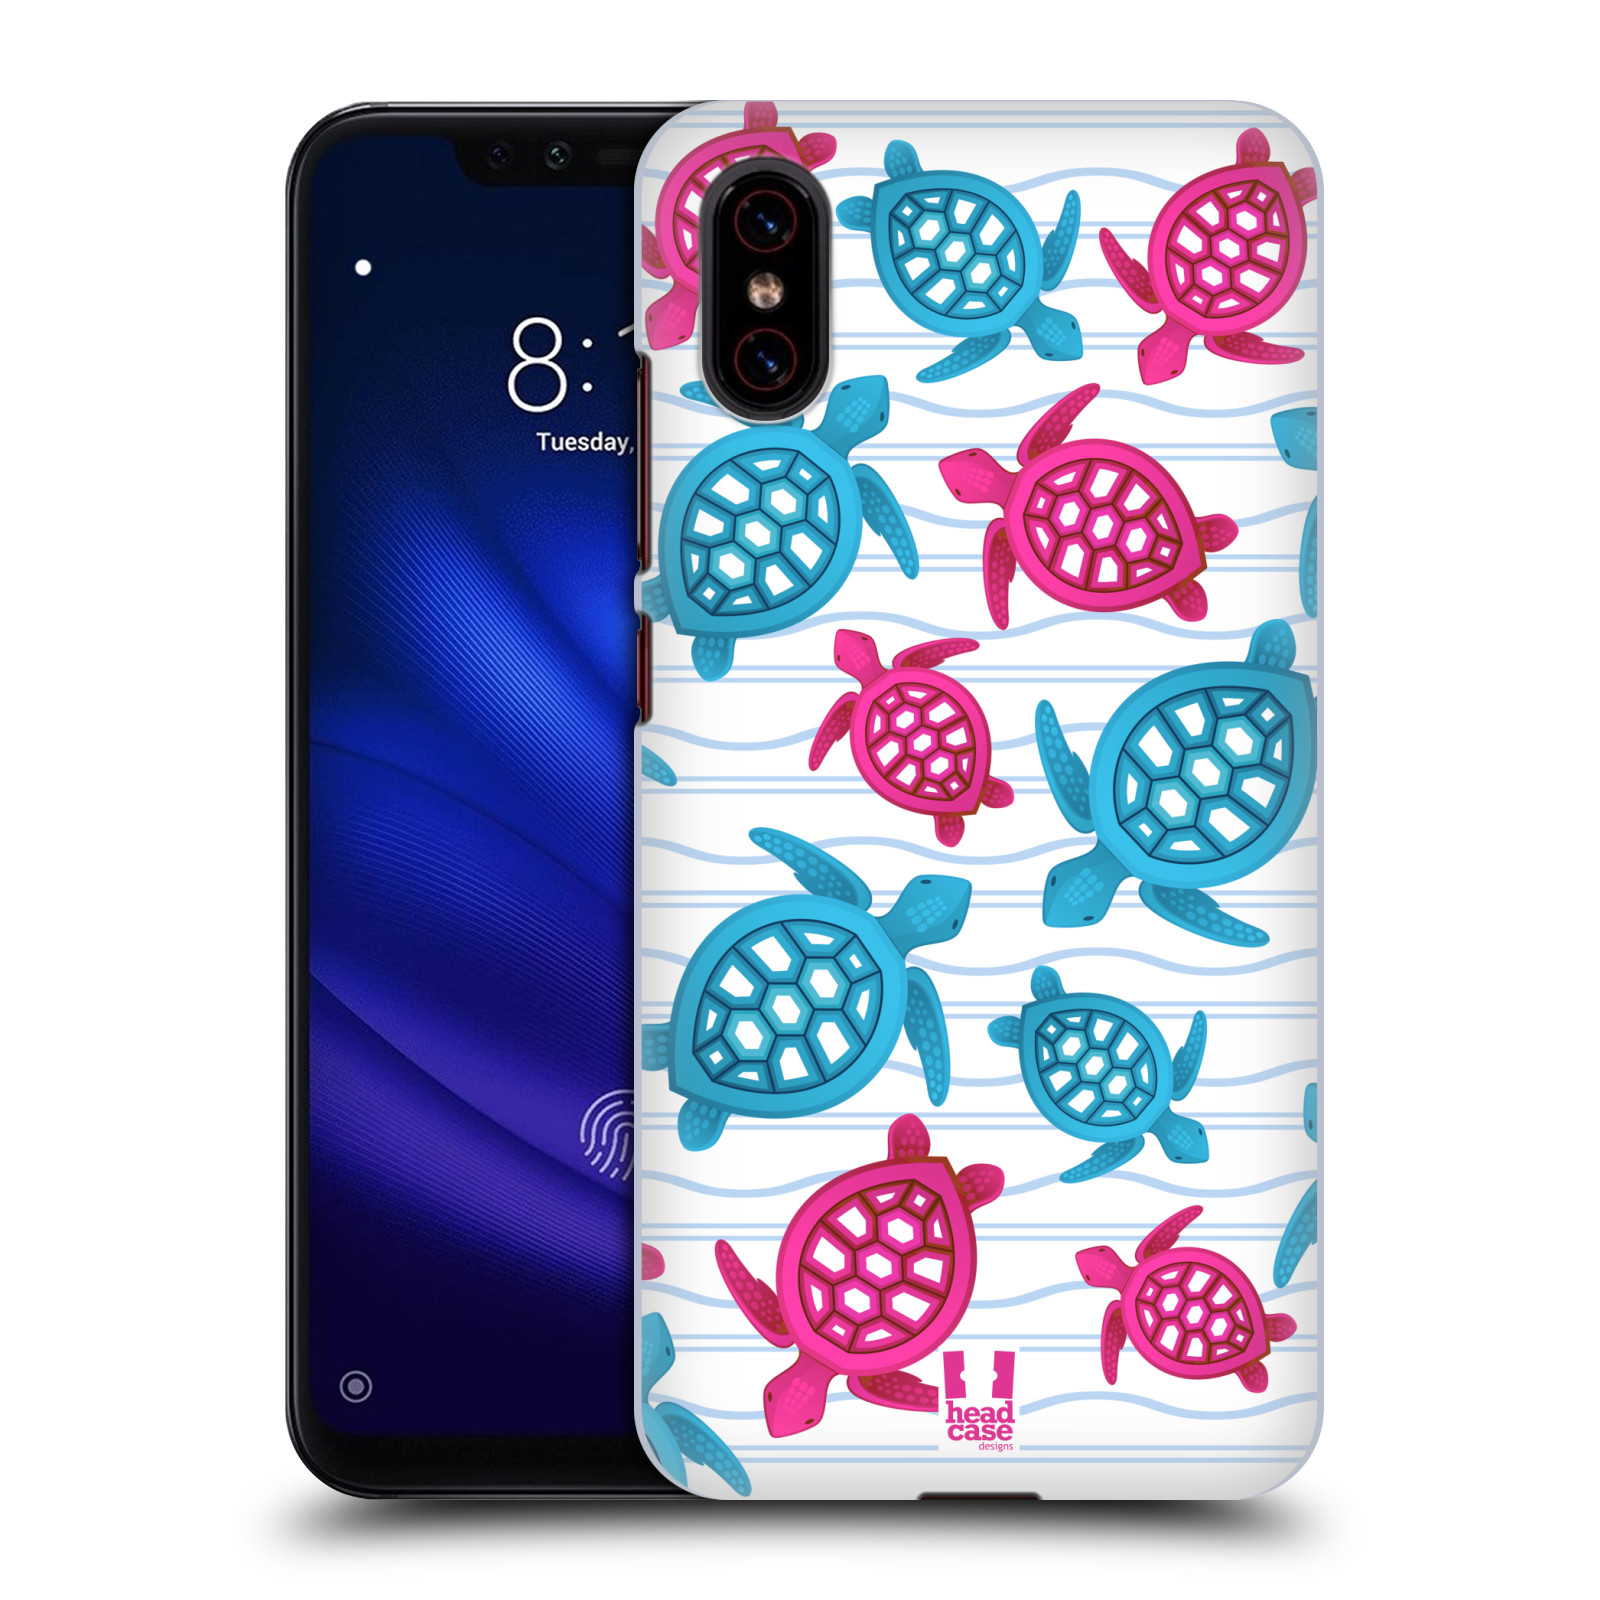 Zadní obal pro mobil Xiaomi Mi 8 PRO - HEAD CASE - kreslený mořský vzor želvičky